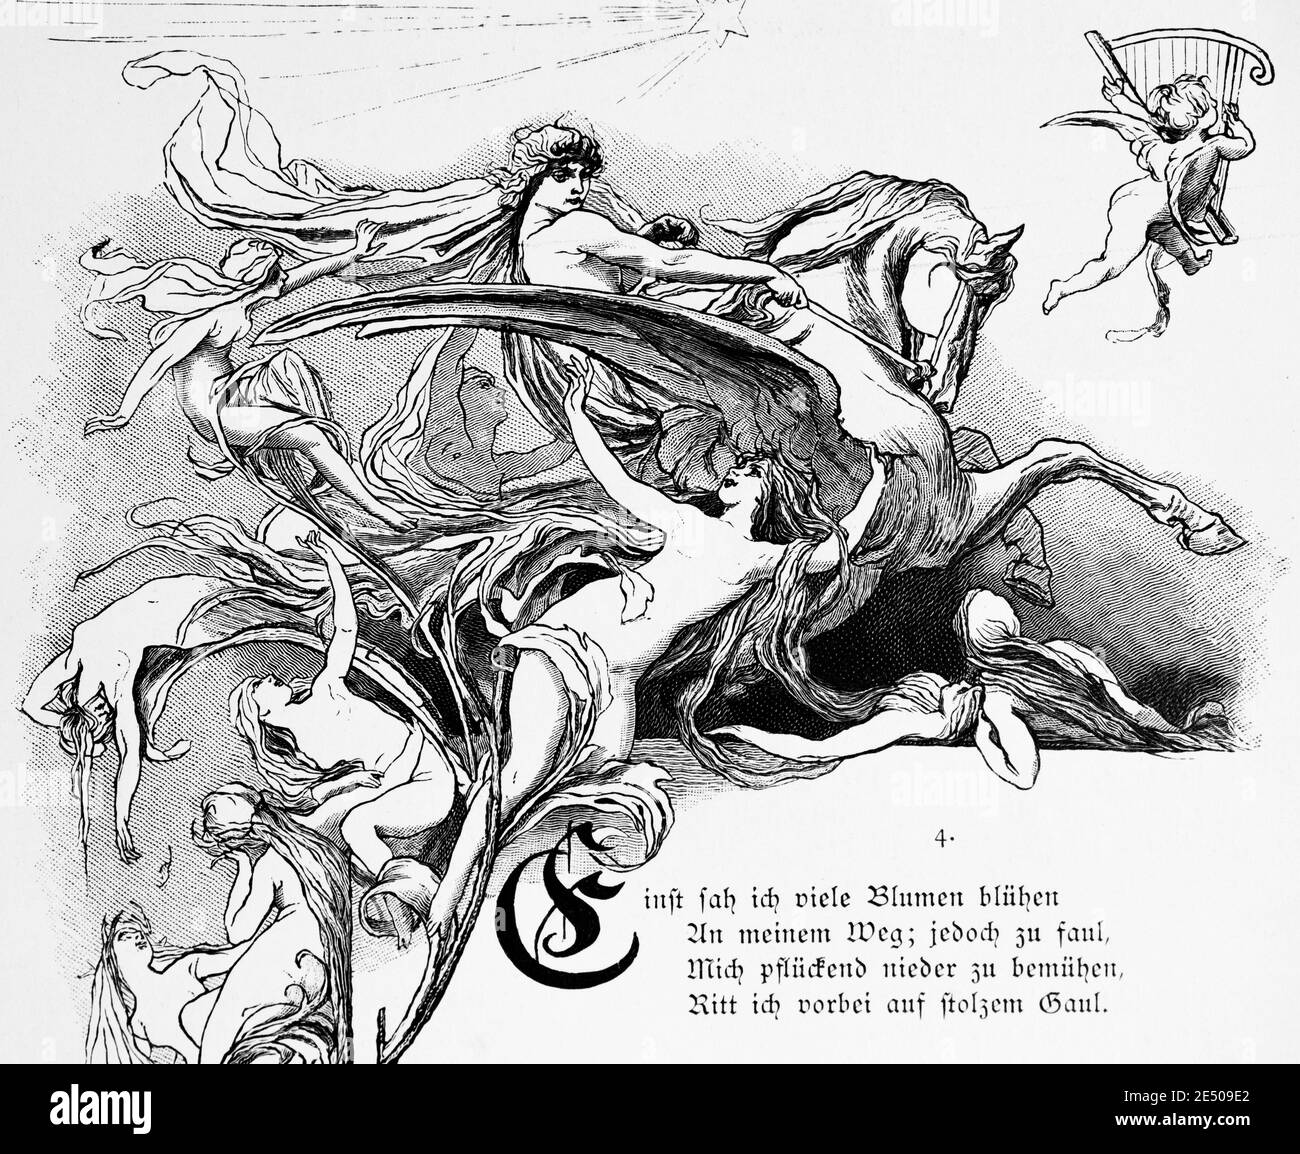 Illustration to Heine´s ironic poem "Zum Lazarus", bad dreams about death,  German writer and poet Heinrich Heine, poem collection Romancero, 1880  Stock Photo - Alamy